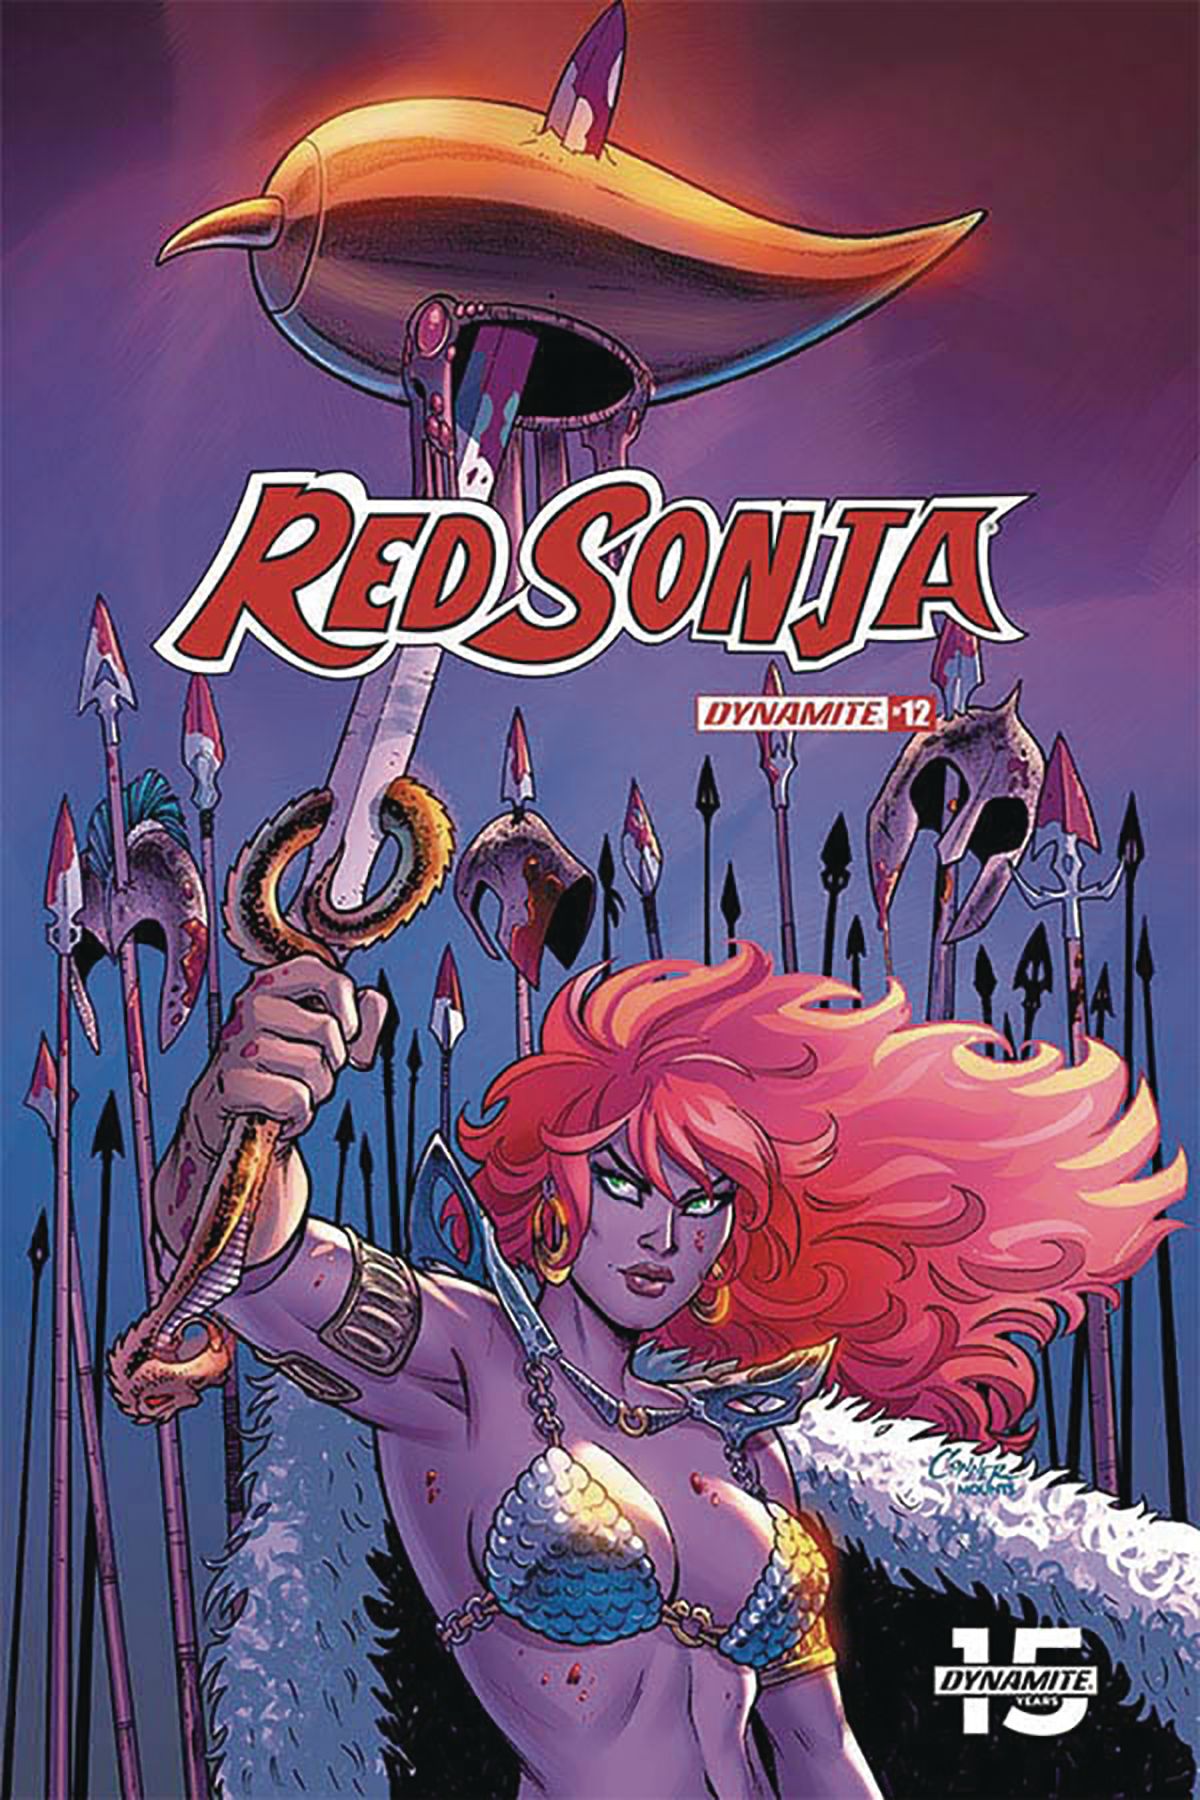 Red Sonja #12 Comic